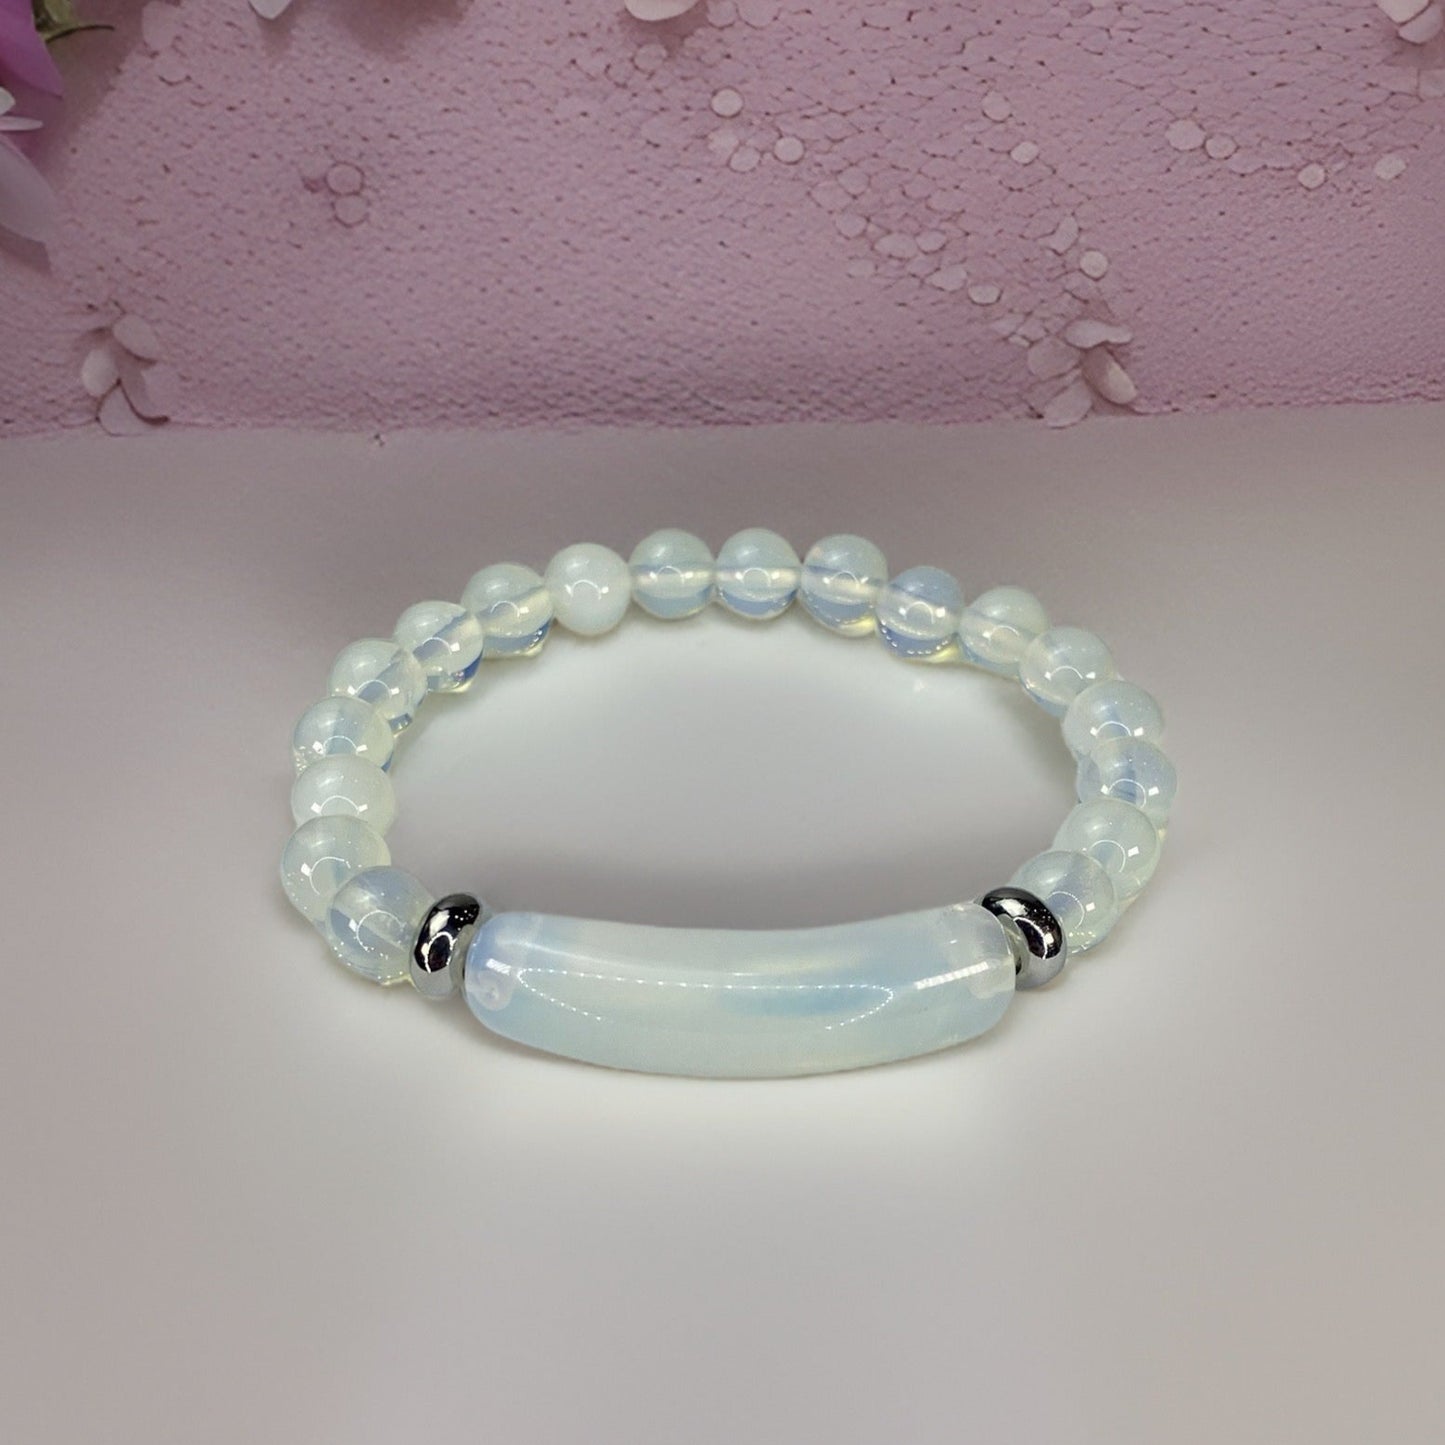 Beads Bracelets (Opalite) (8 mm)